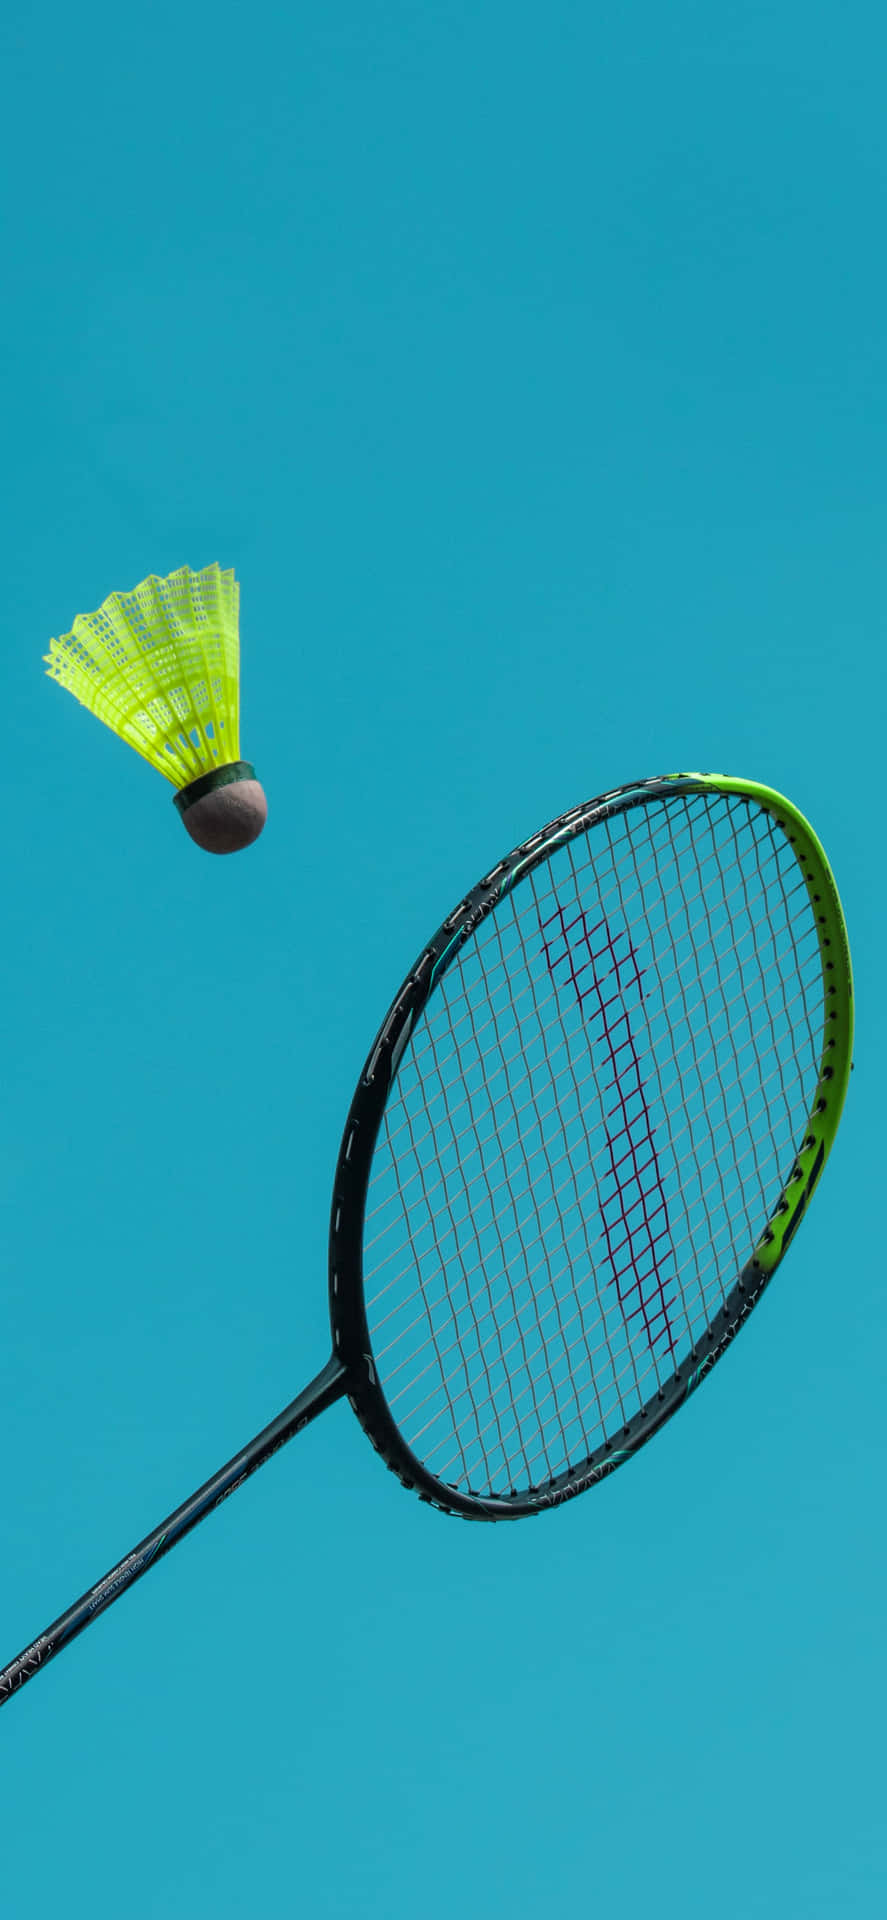 Concorrendonella Più Recente Tecnologia: Iphone Xs Max E Badminton